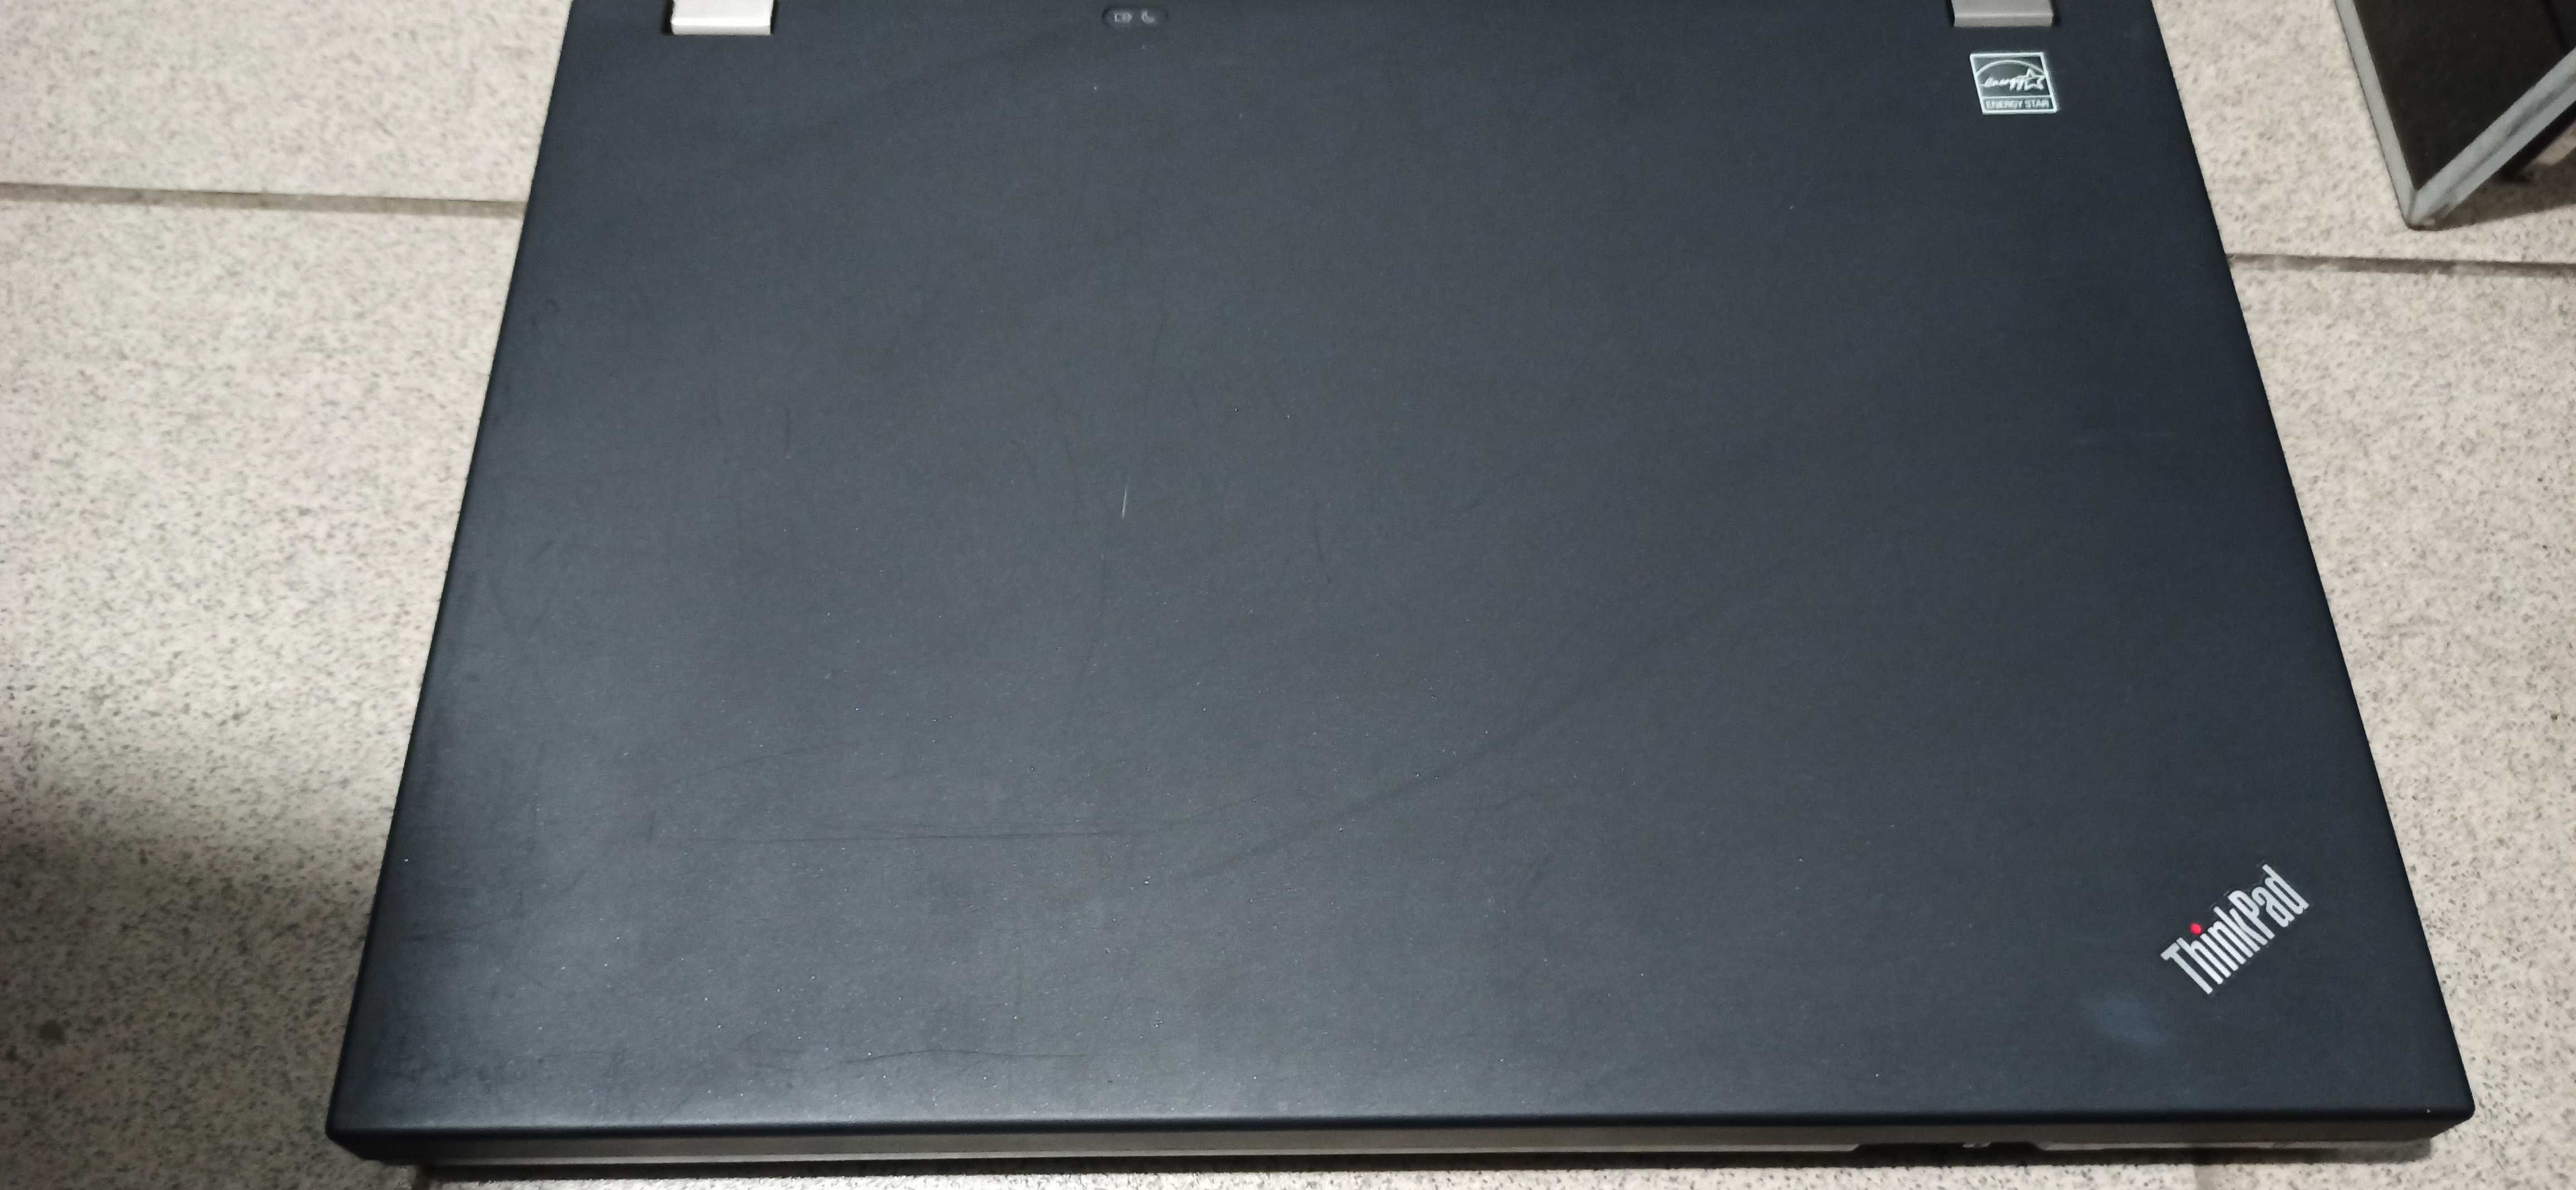 Ноутбук Lenovo IdeaPad T410 i5/DDRIII4Gb/HDD500Gb